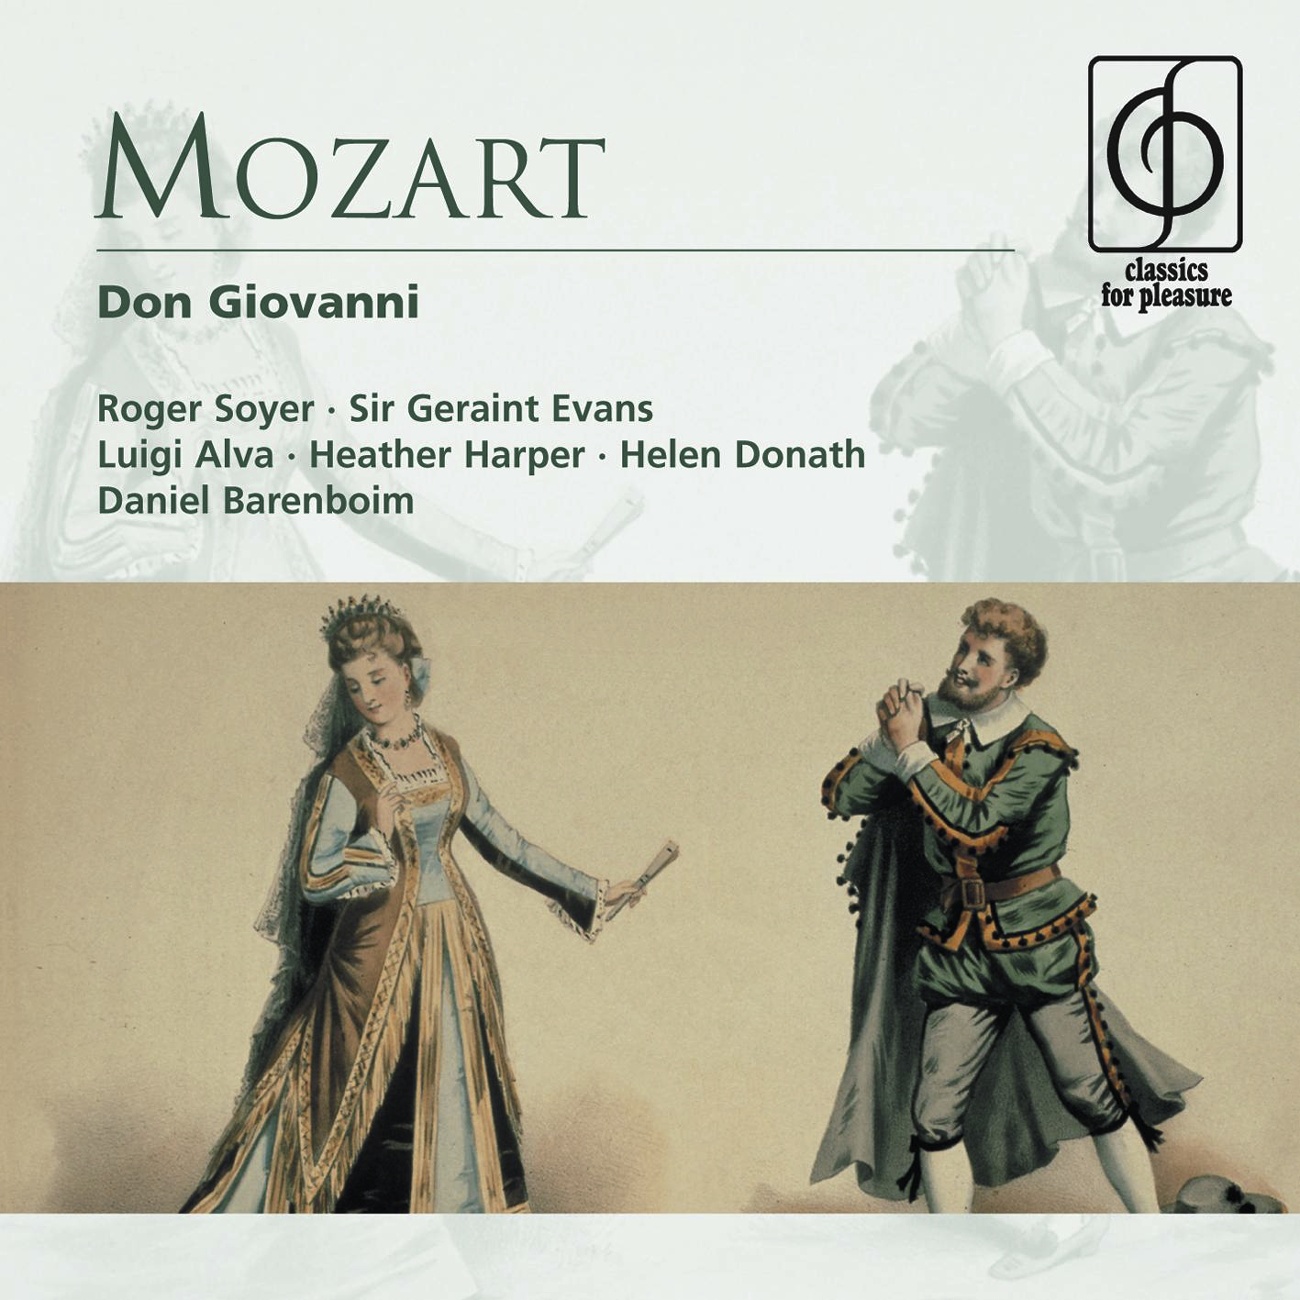 Don Giovanni - Opera in two acts K527 (1991 Digital Remaster), Act II, Scena prima: Ah, taci in giusto core (Donna Elvira/Lepore